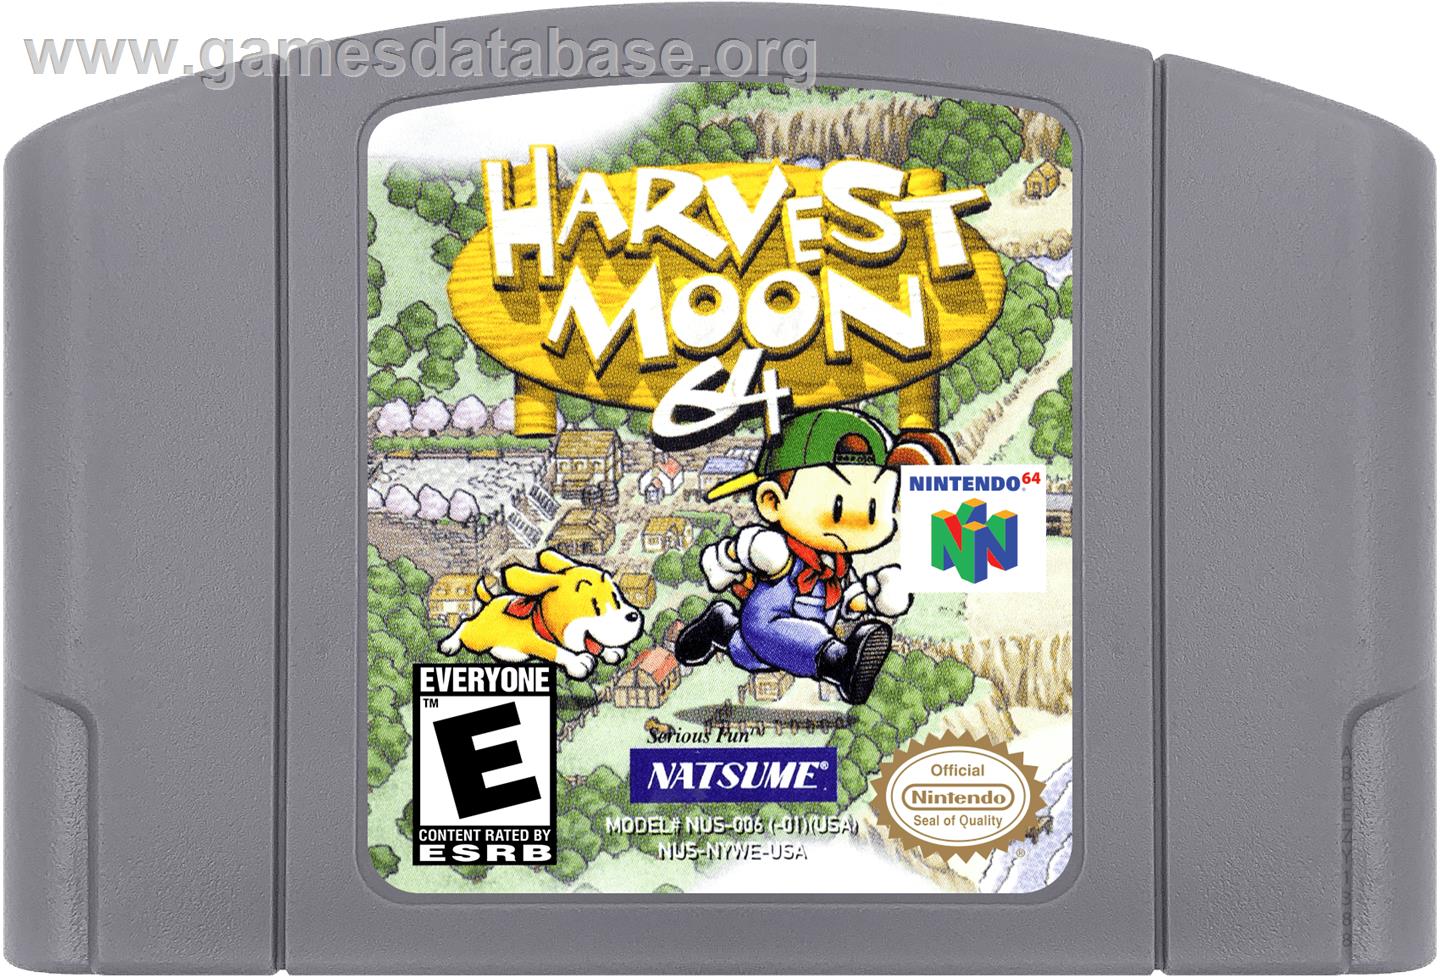 Harvest Moon 64 - Nintendo N64 - Artwork - Cartridge